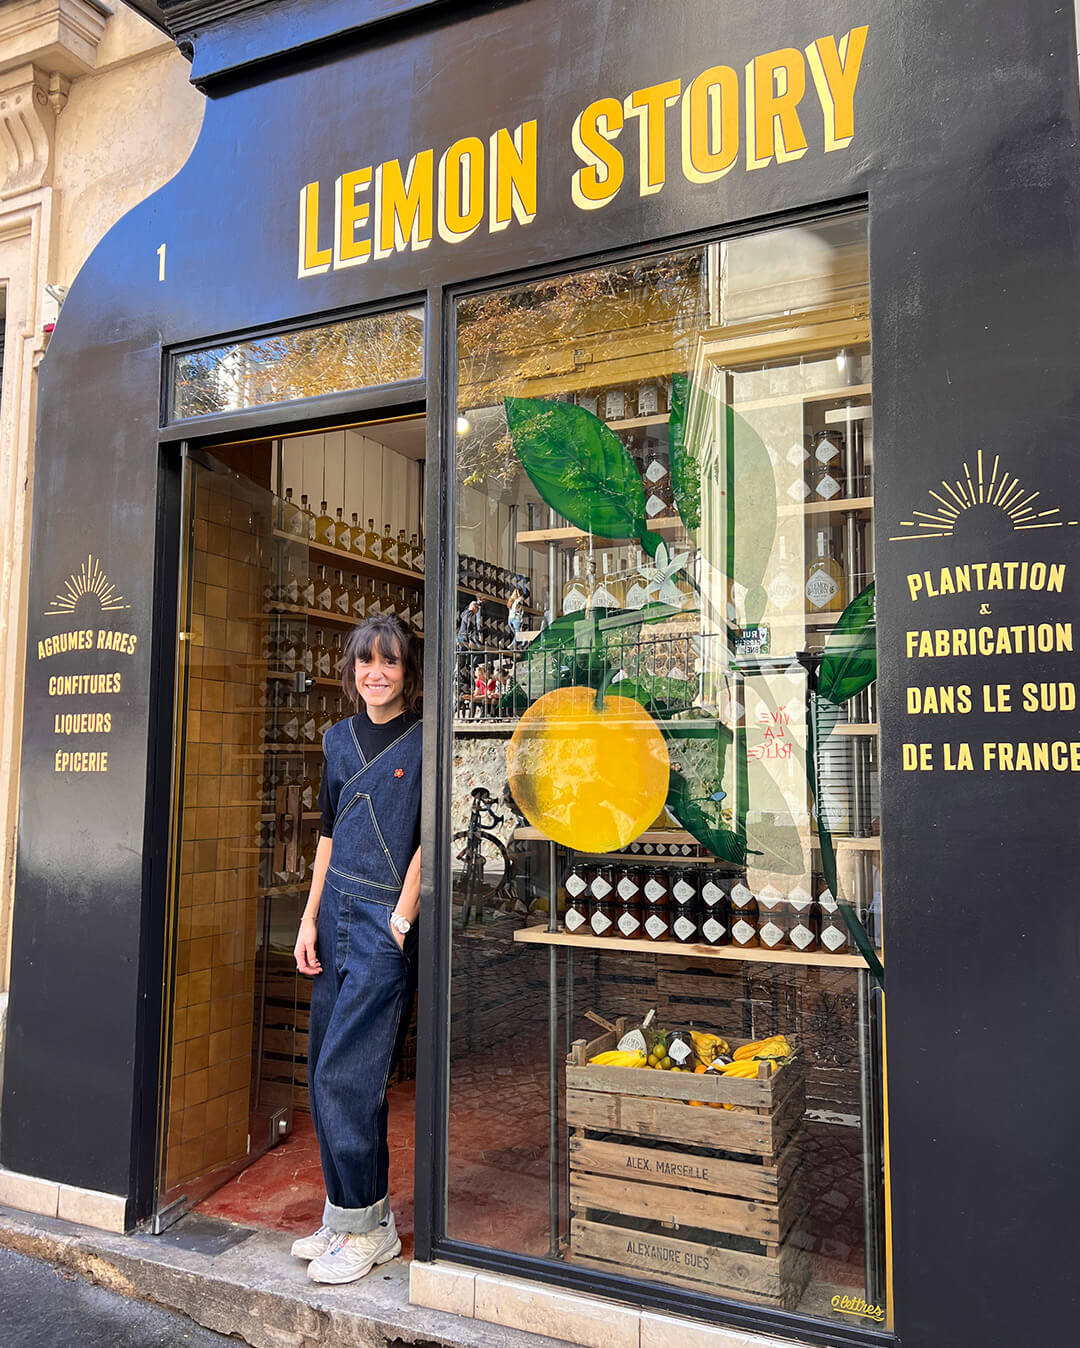 La boutique Lemon Story - Plantation d'agrumes rares Lemon Story - La Crau France